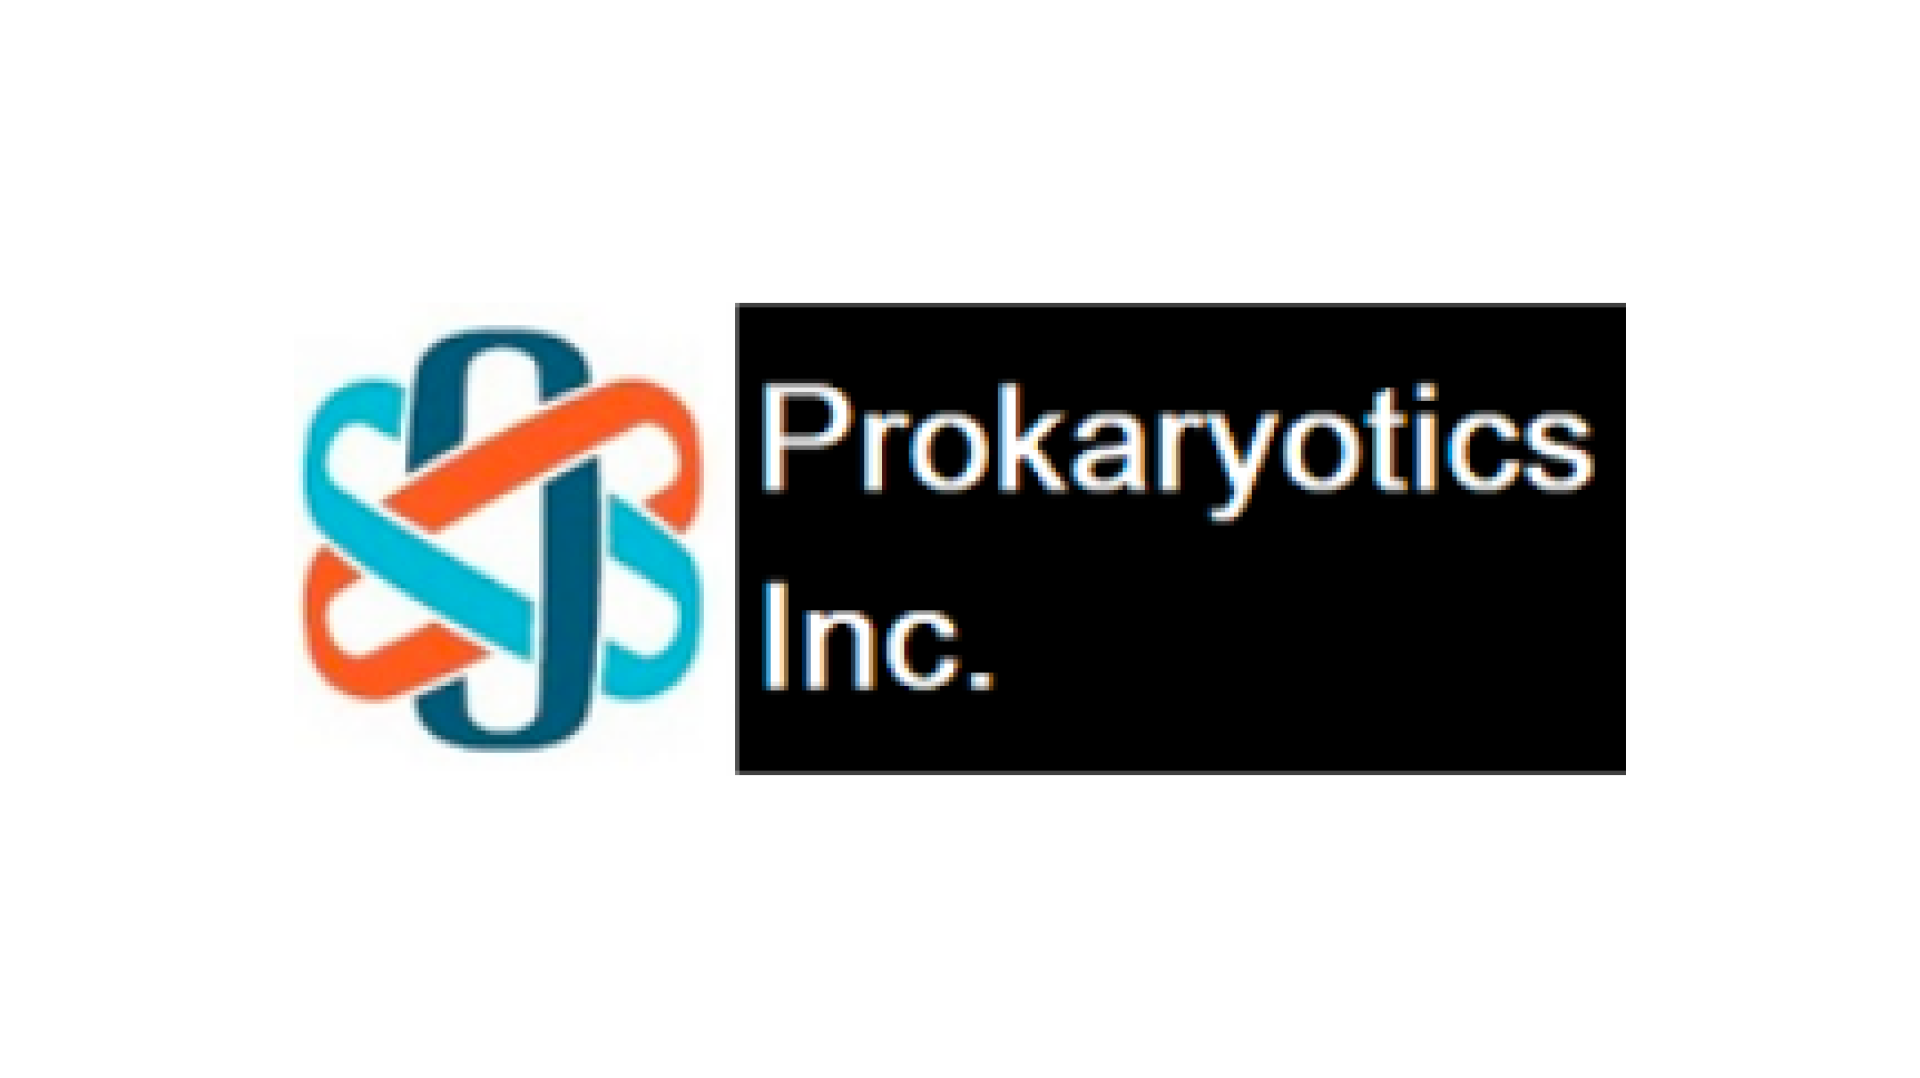 Prokaryotics Inc., USA